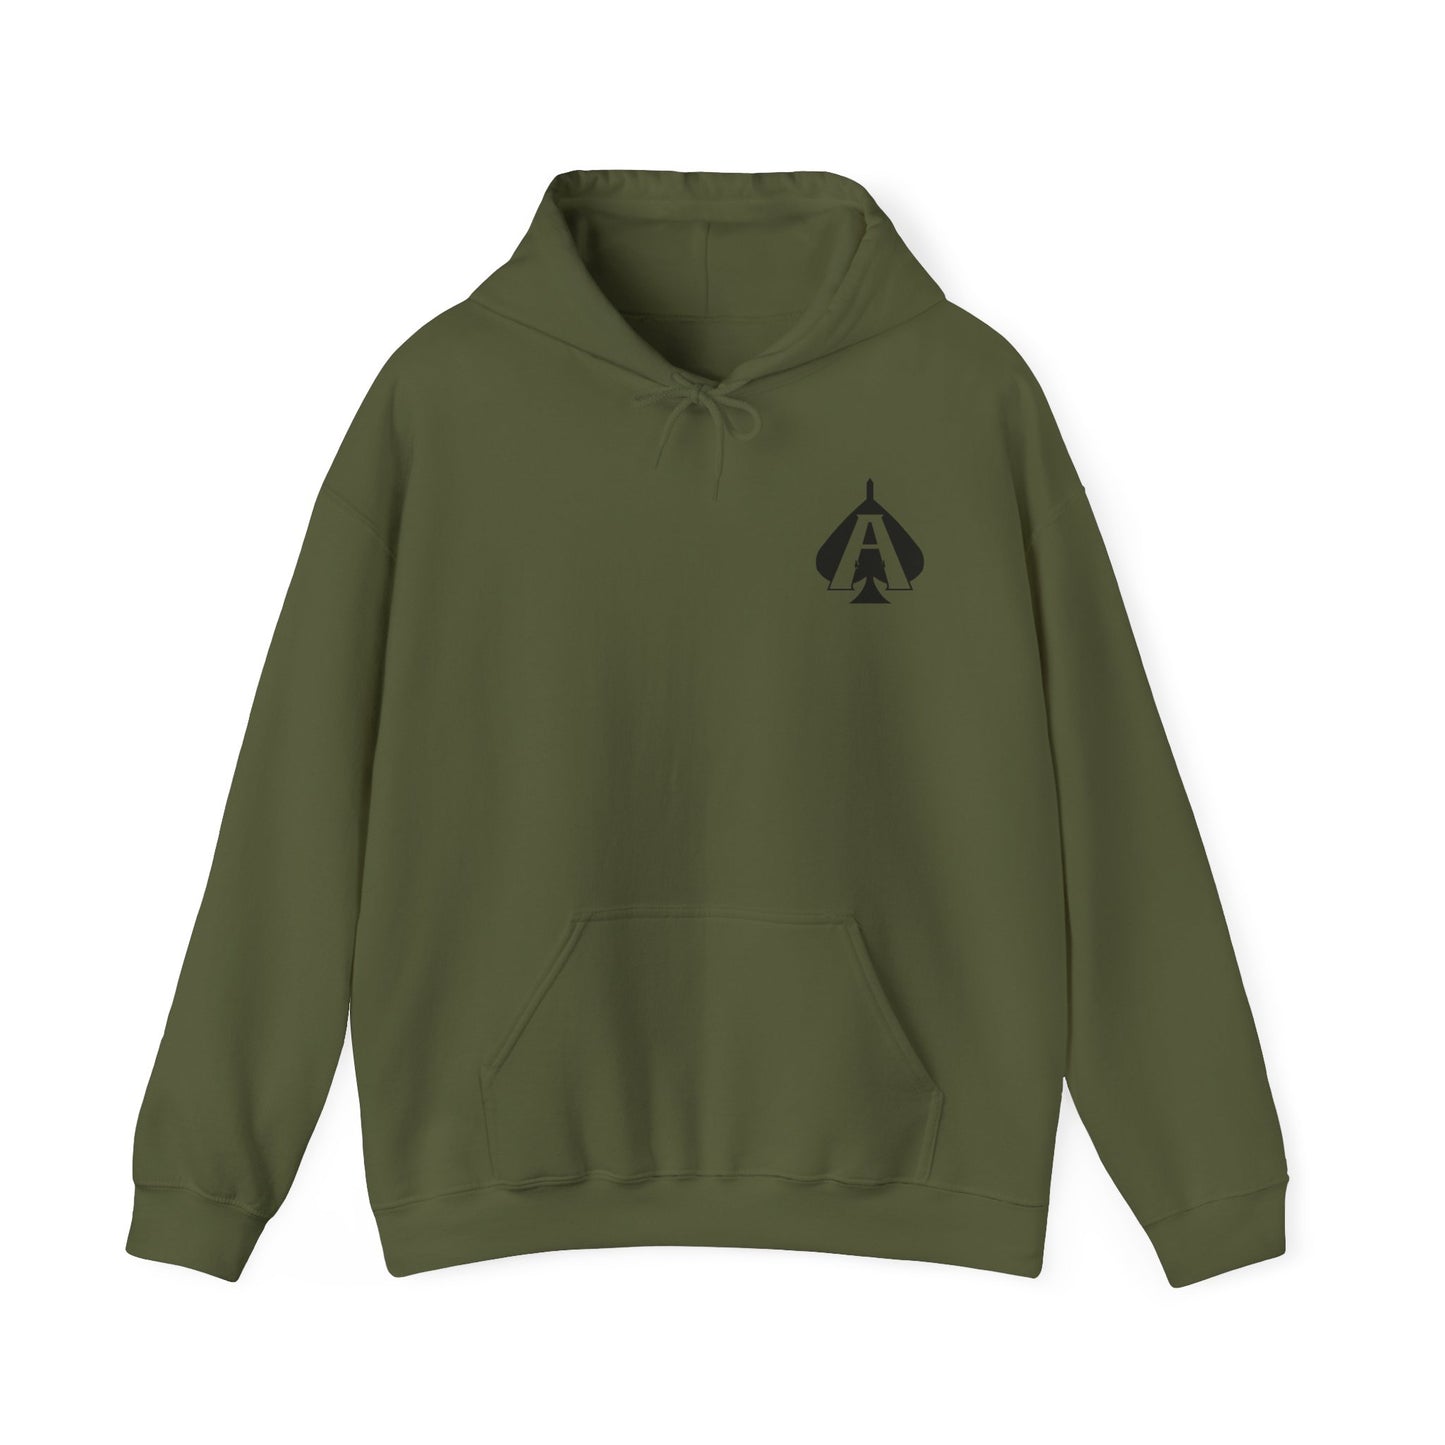 JCU Best Troop Spades Subdued Hooded Sweatshirt